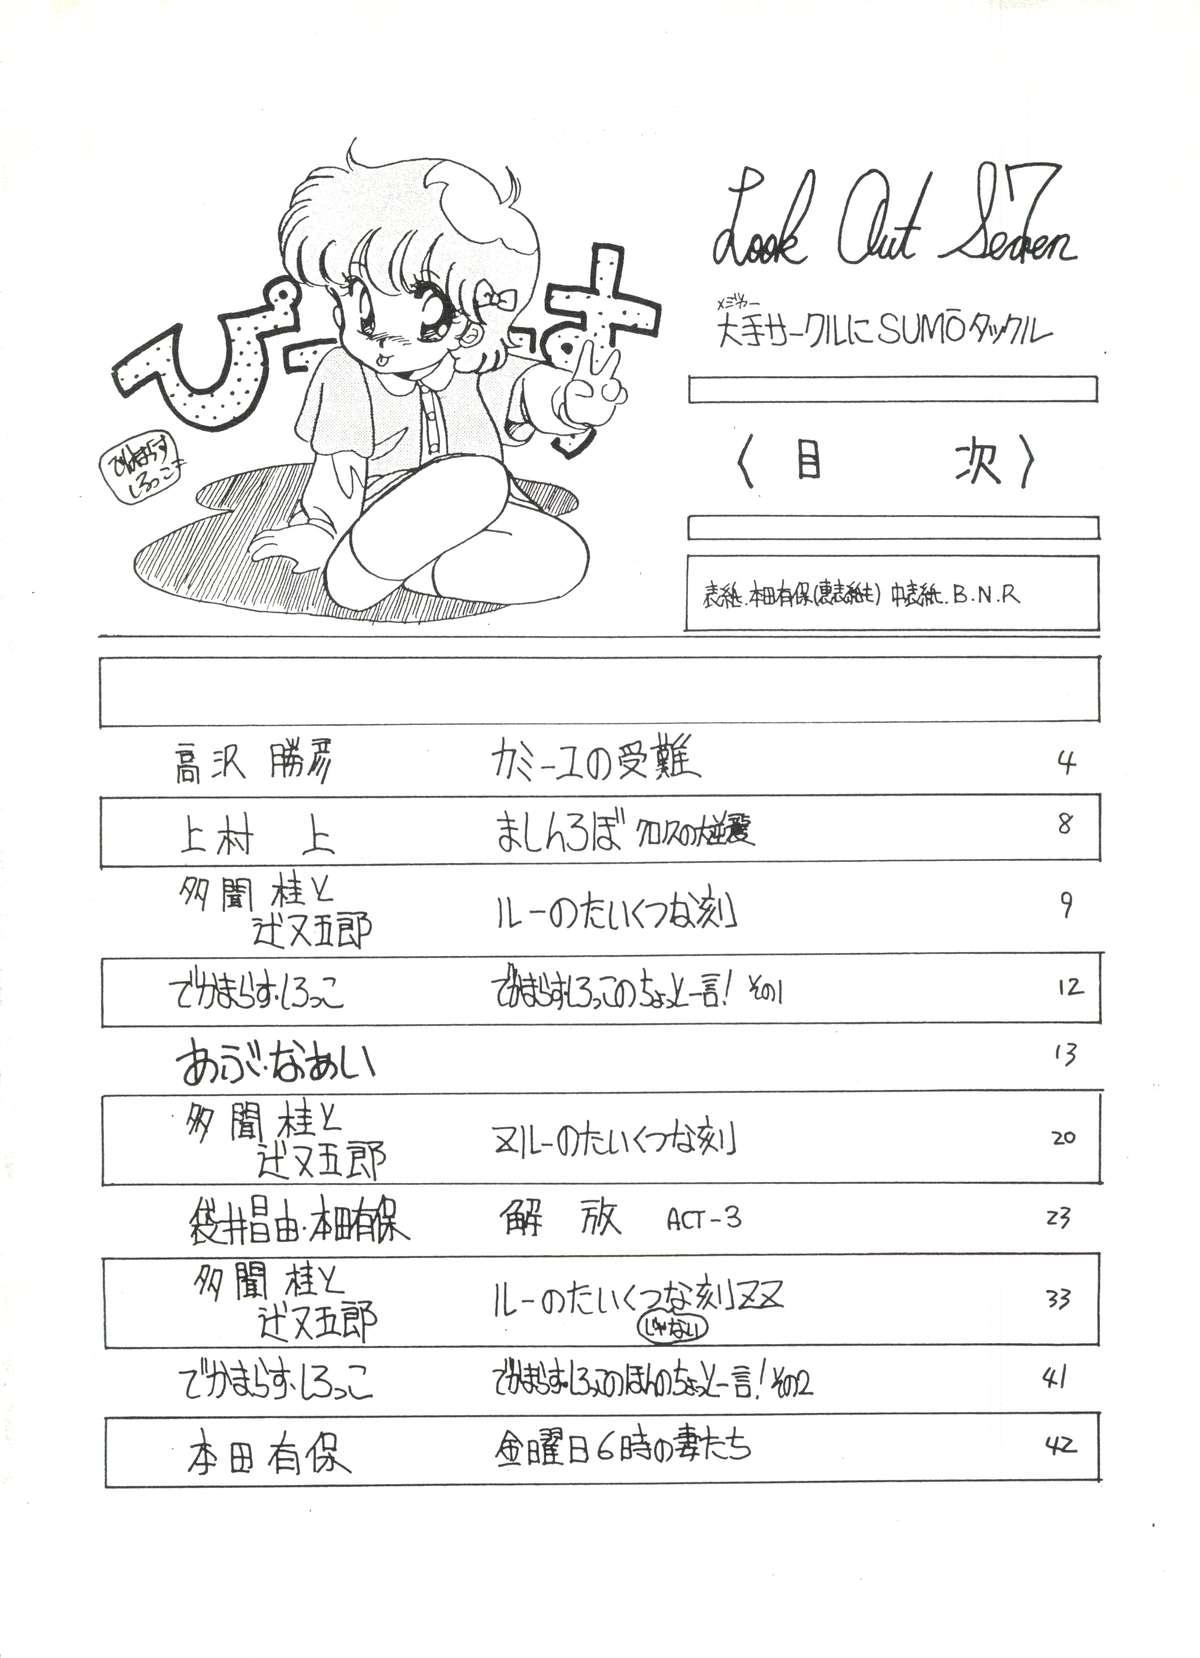 Girl Girl LOOK OUT 7 - Urusei yatsura Maison ikkoku Gundam zz Pastel yumi Lez Fuck - Page 2